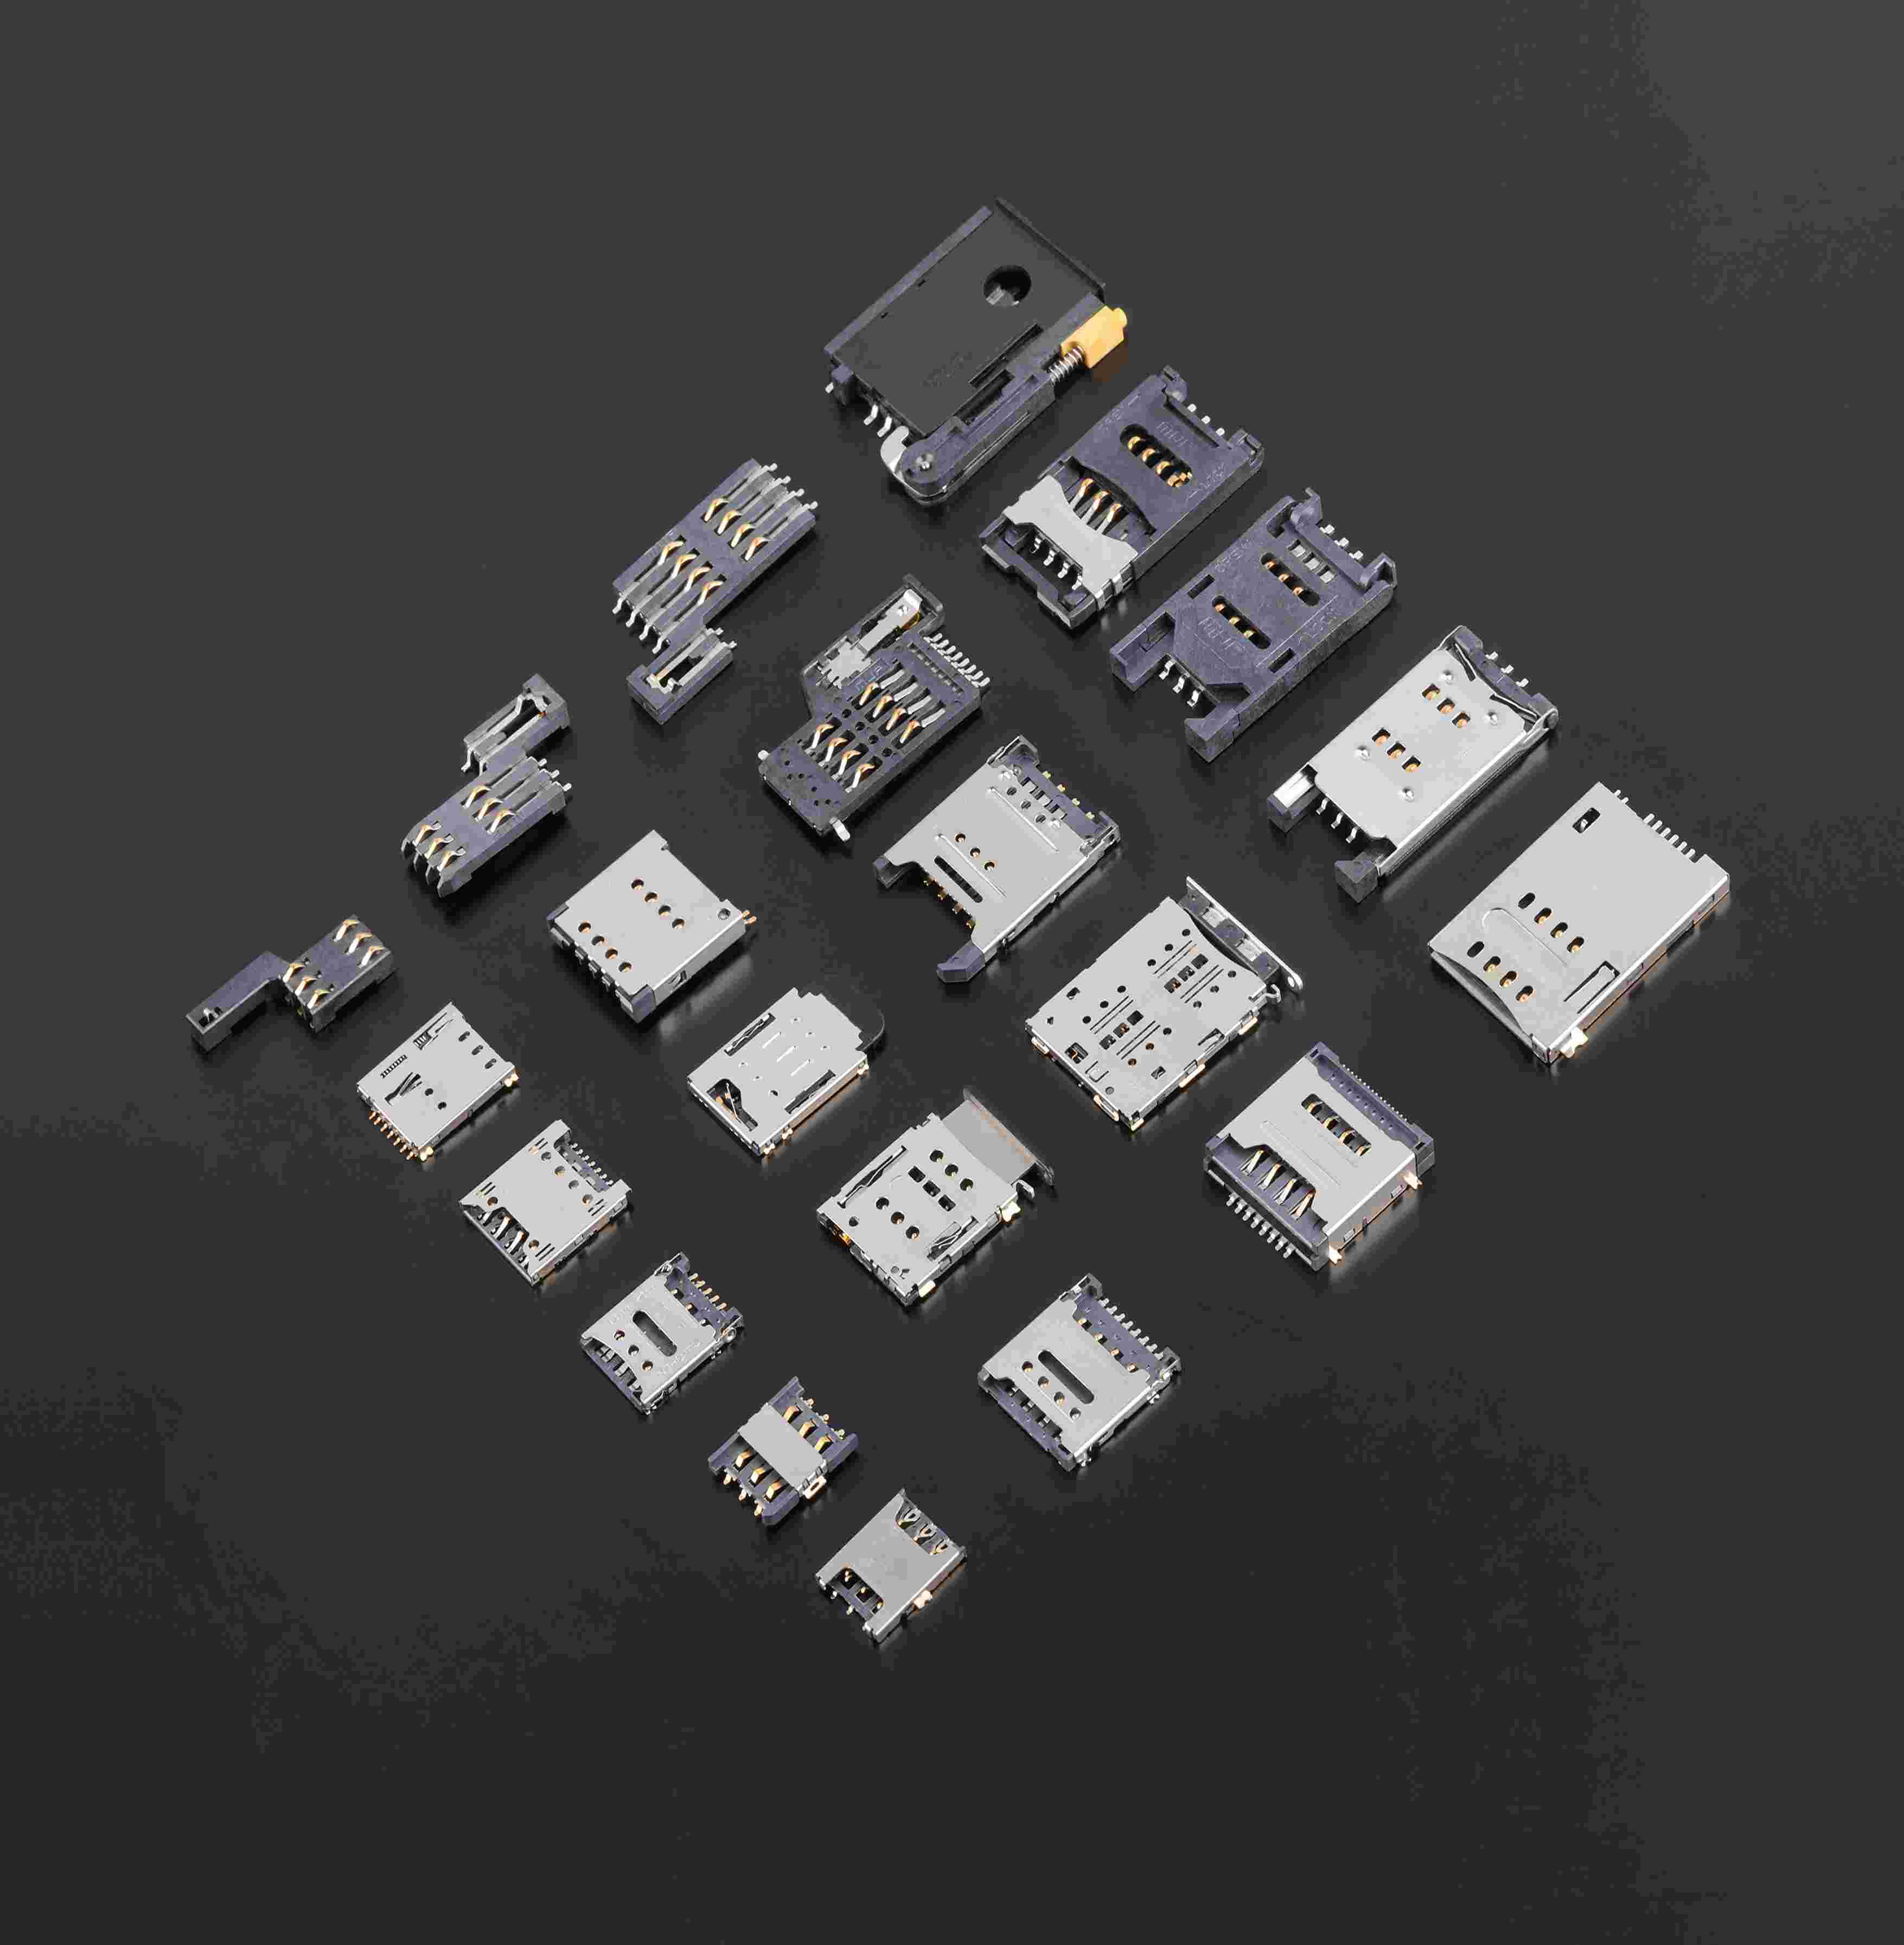  双切卡和三切卡的区别 Mini SIM connector 、Micro SIM connector & Nano SIM connector